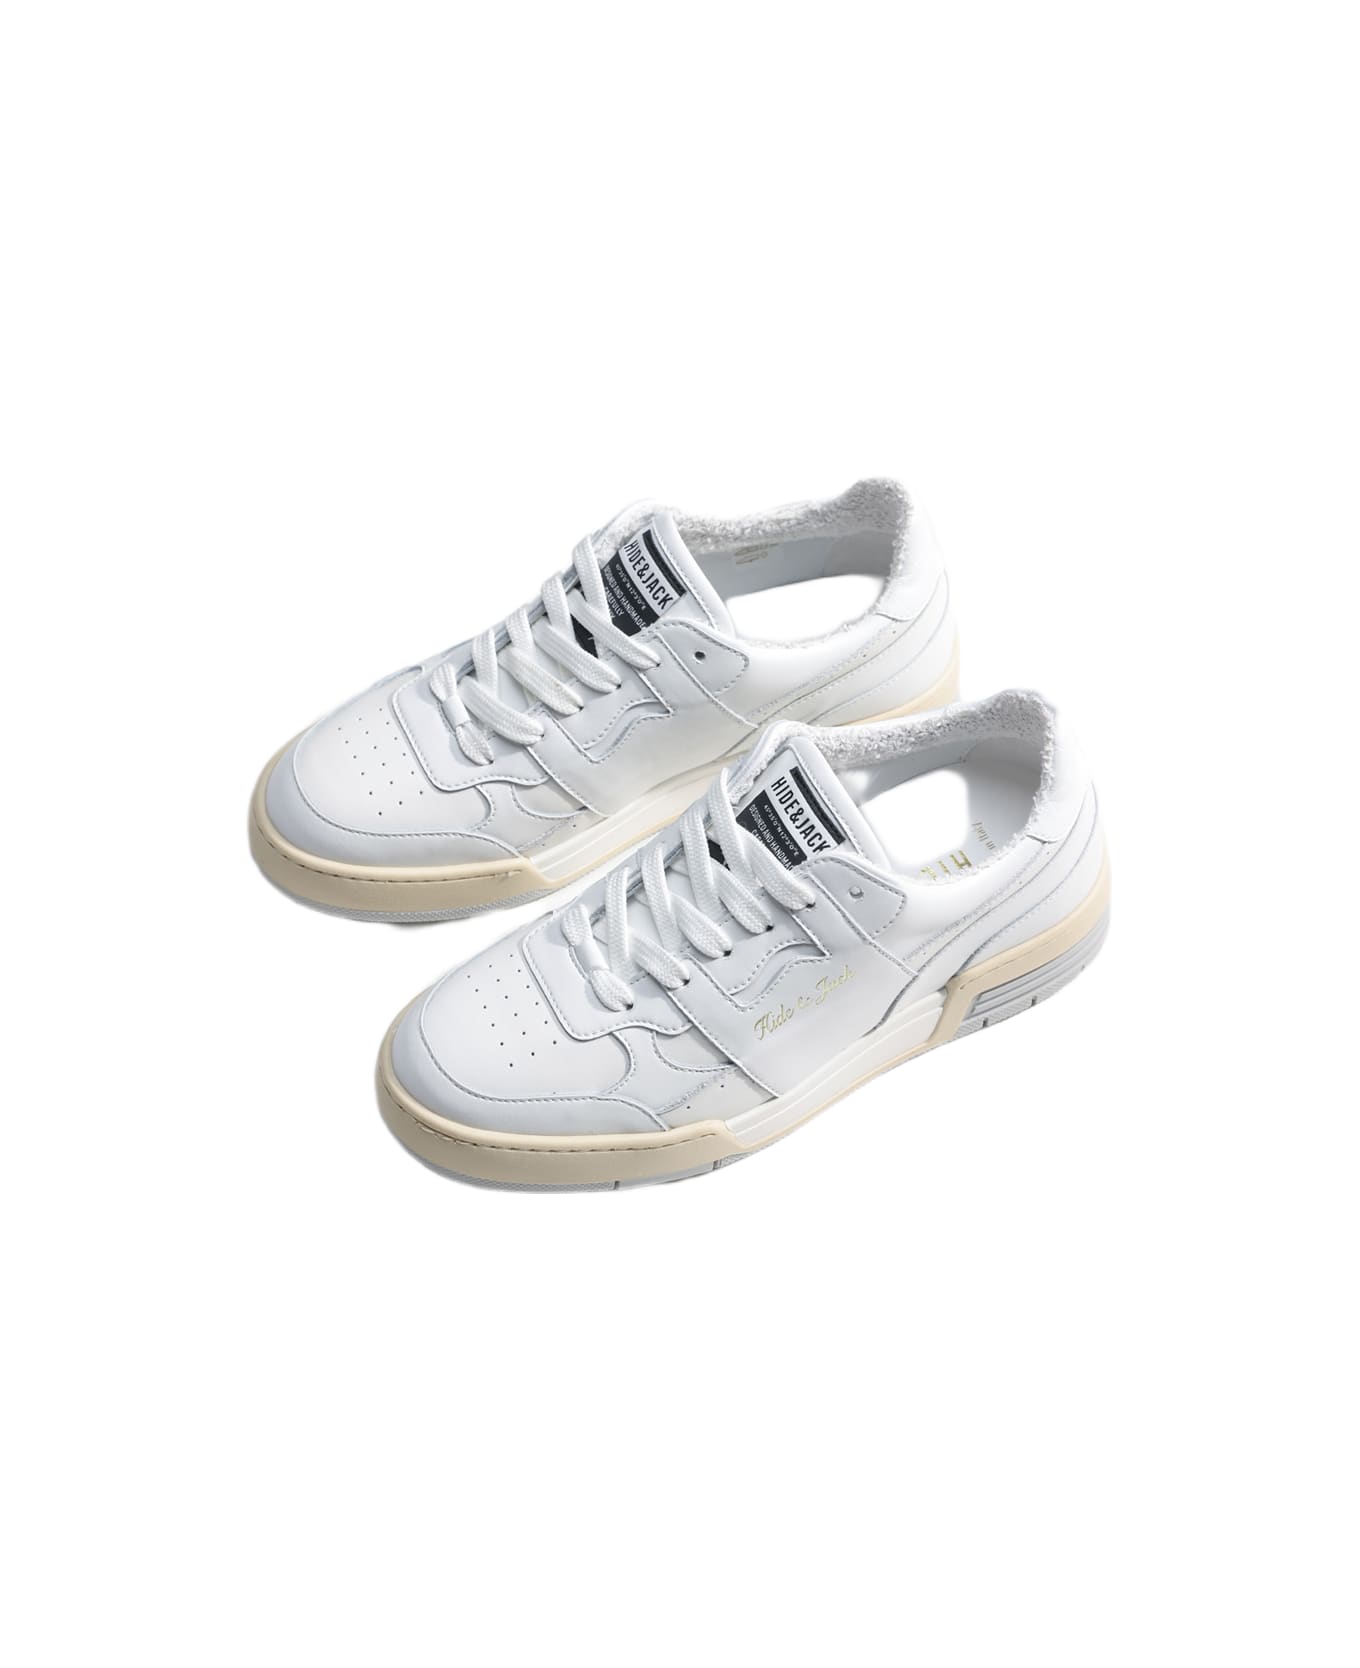 Hide&Jack Low Top Sneaker - Raby White